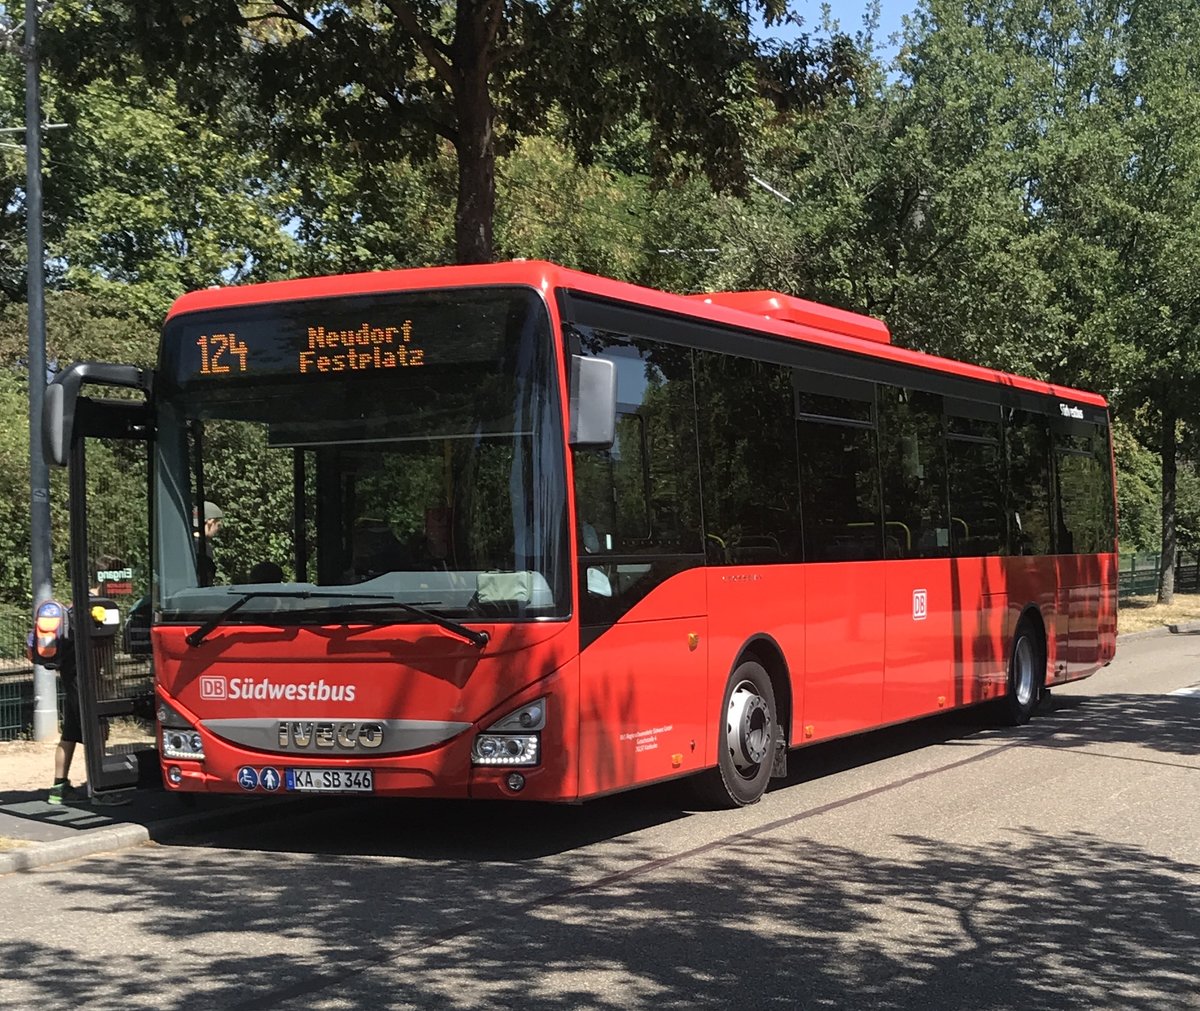 Hier ist der KA SB 346 der Südwestbus auf dem Schulbuskurs der Linie 124 nach Neudorf Festplatz unterwegs. Gesichtet am 19.07.2018 an der Haltestelle Glogauer Straße in Karlsruhe.